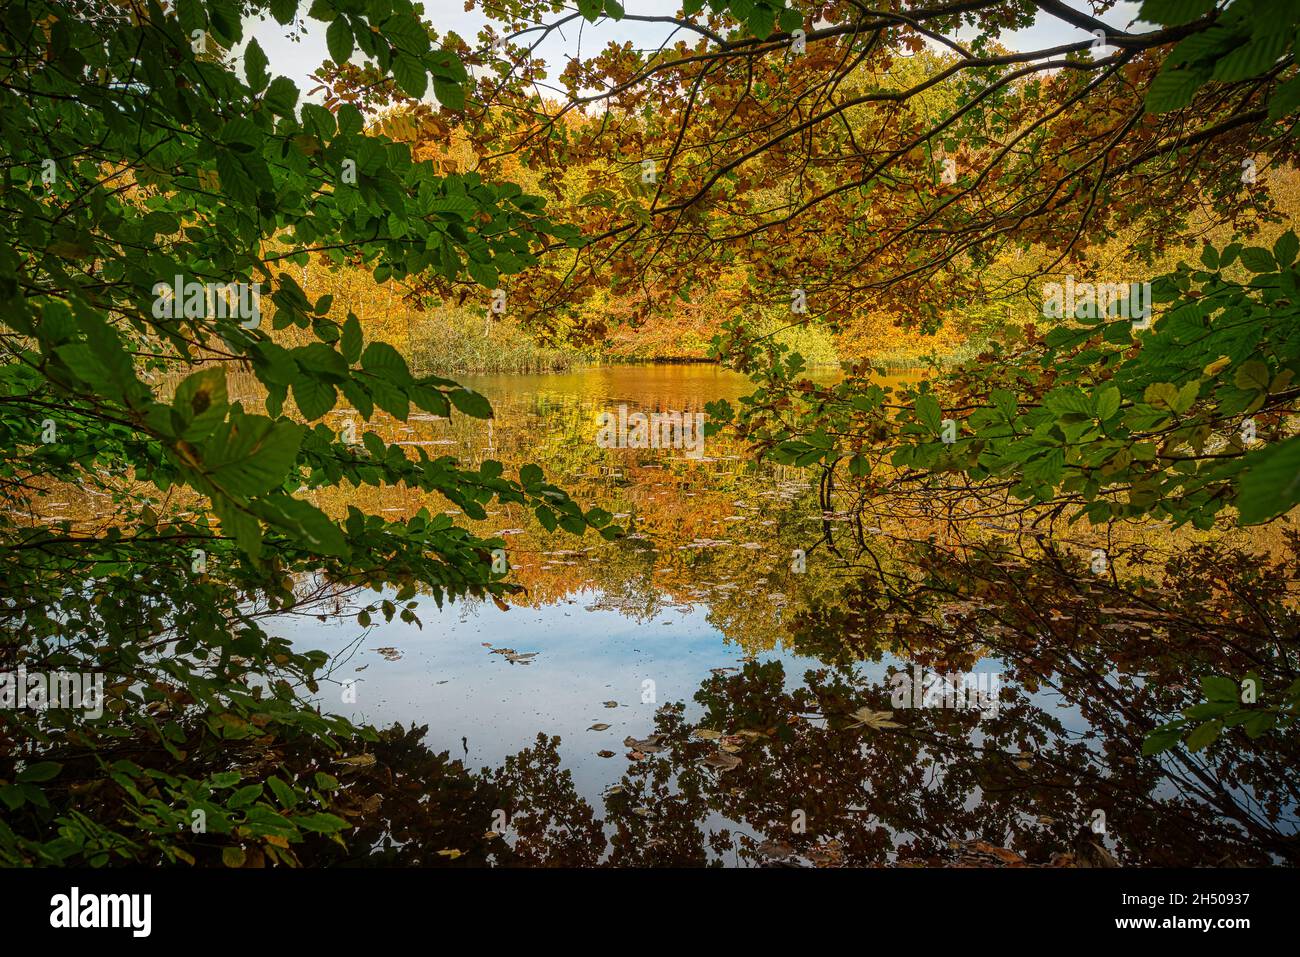 Feuillage aux couleurs vives de l'automne se reflétant dans un lac tranquille en Zélande, au Danemark, le 25 octobre 2021 Banque D'Images